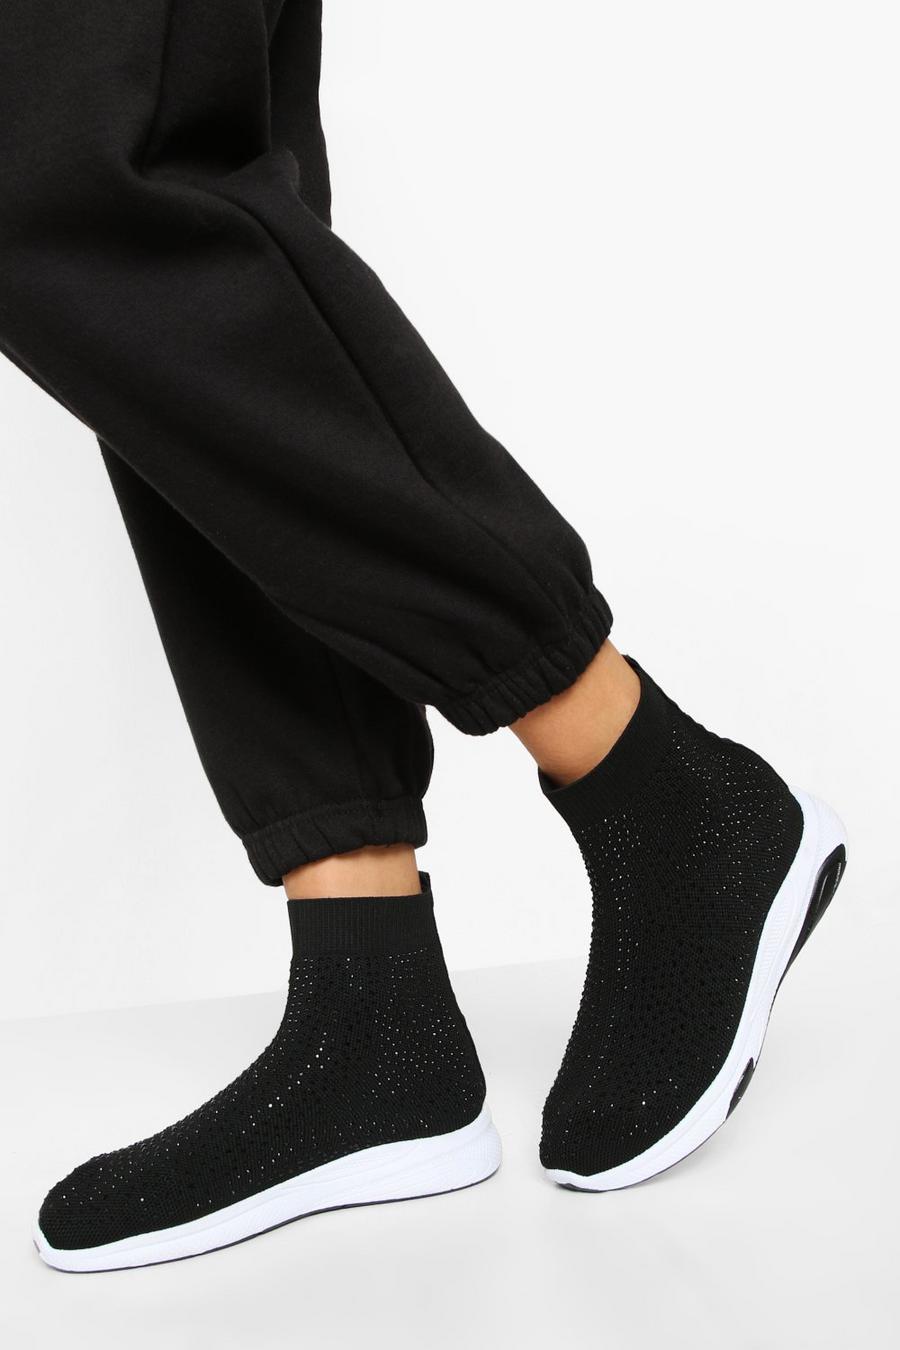 Sneaker a calza a calzata ampia con strass, Black nero